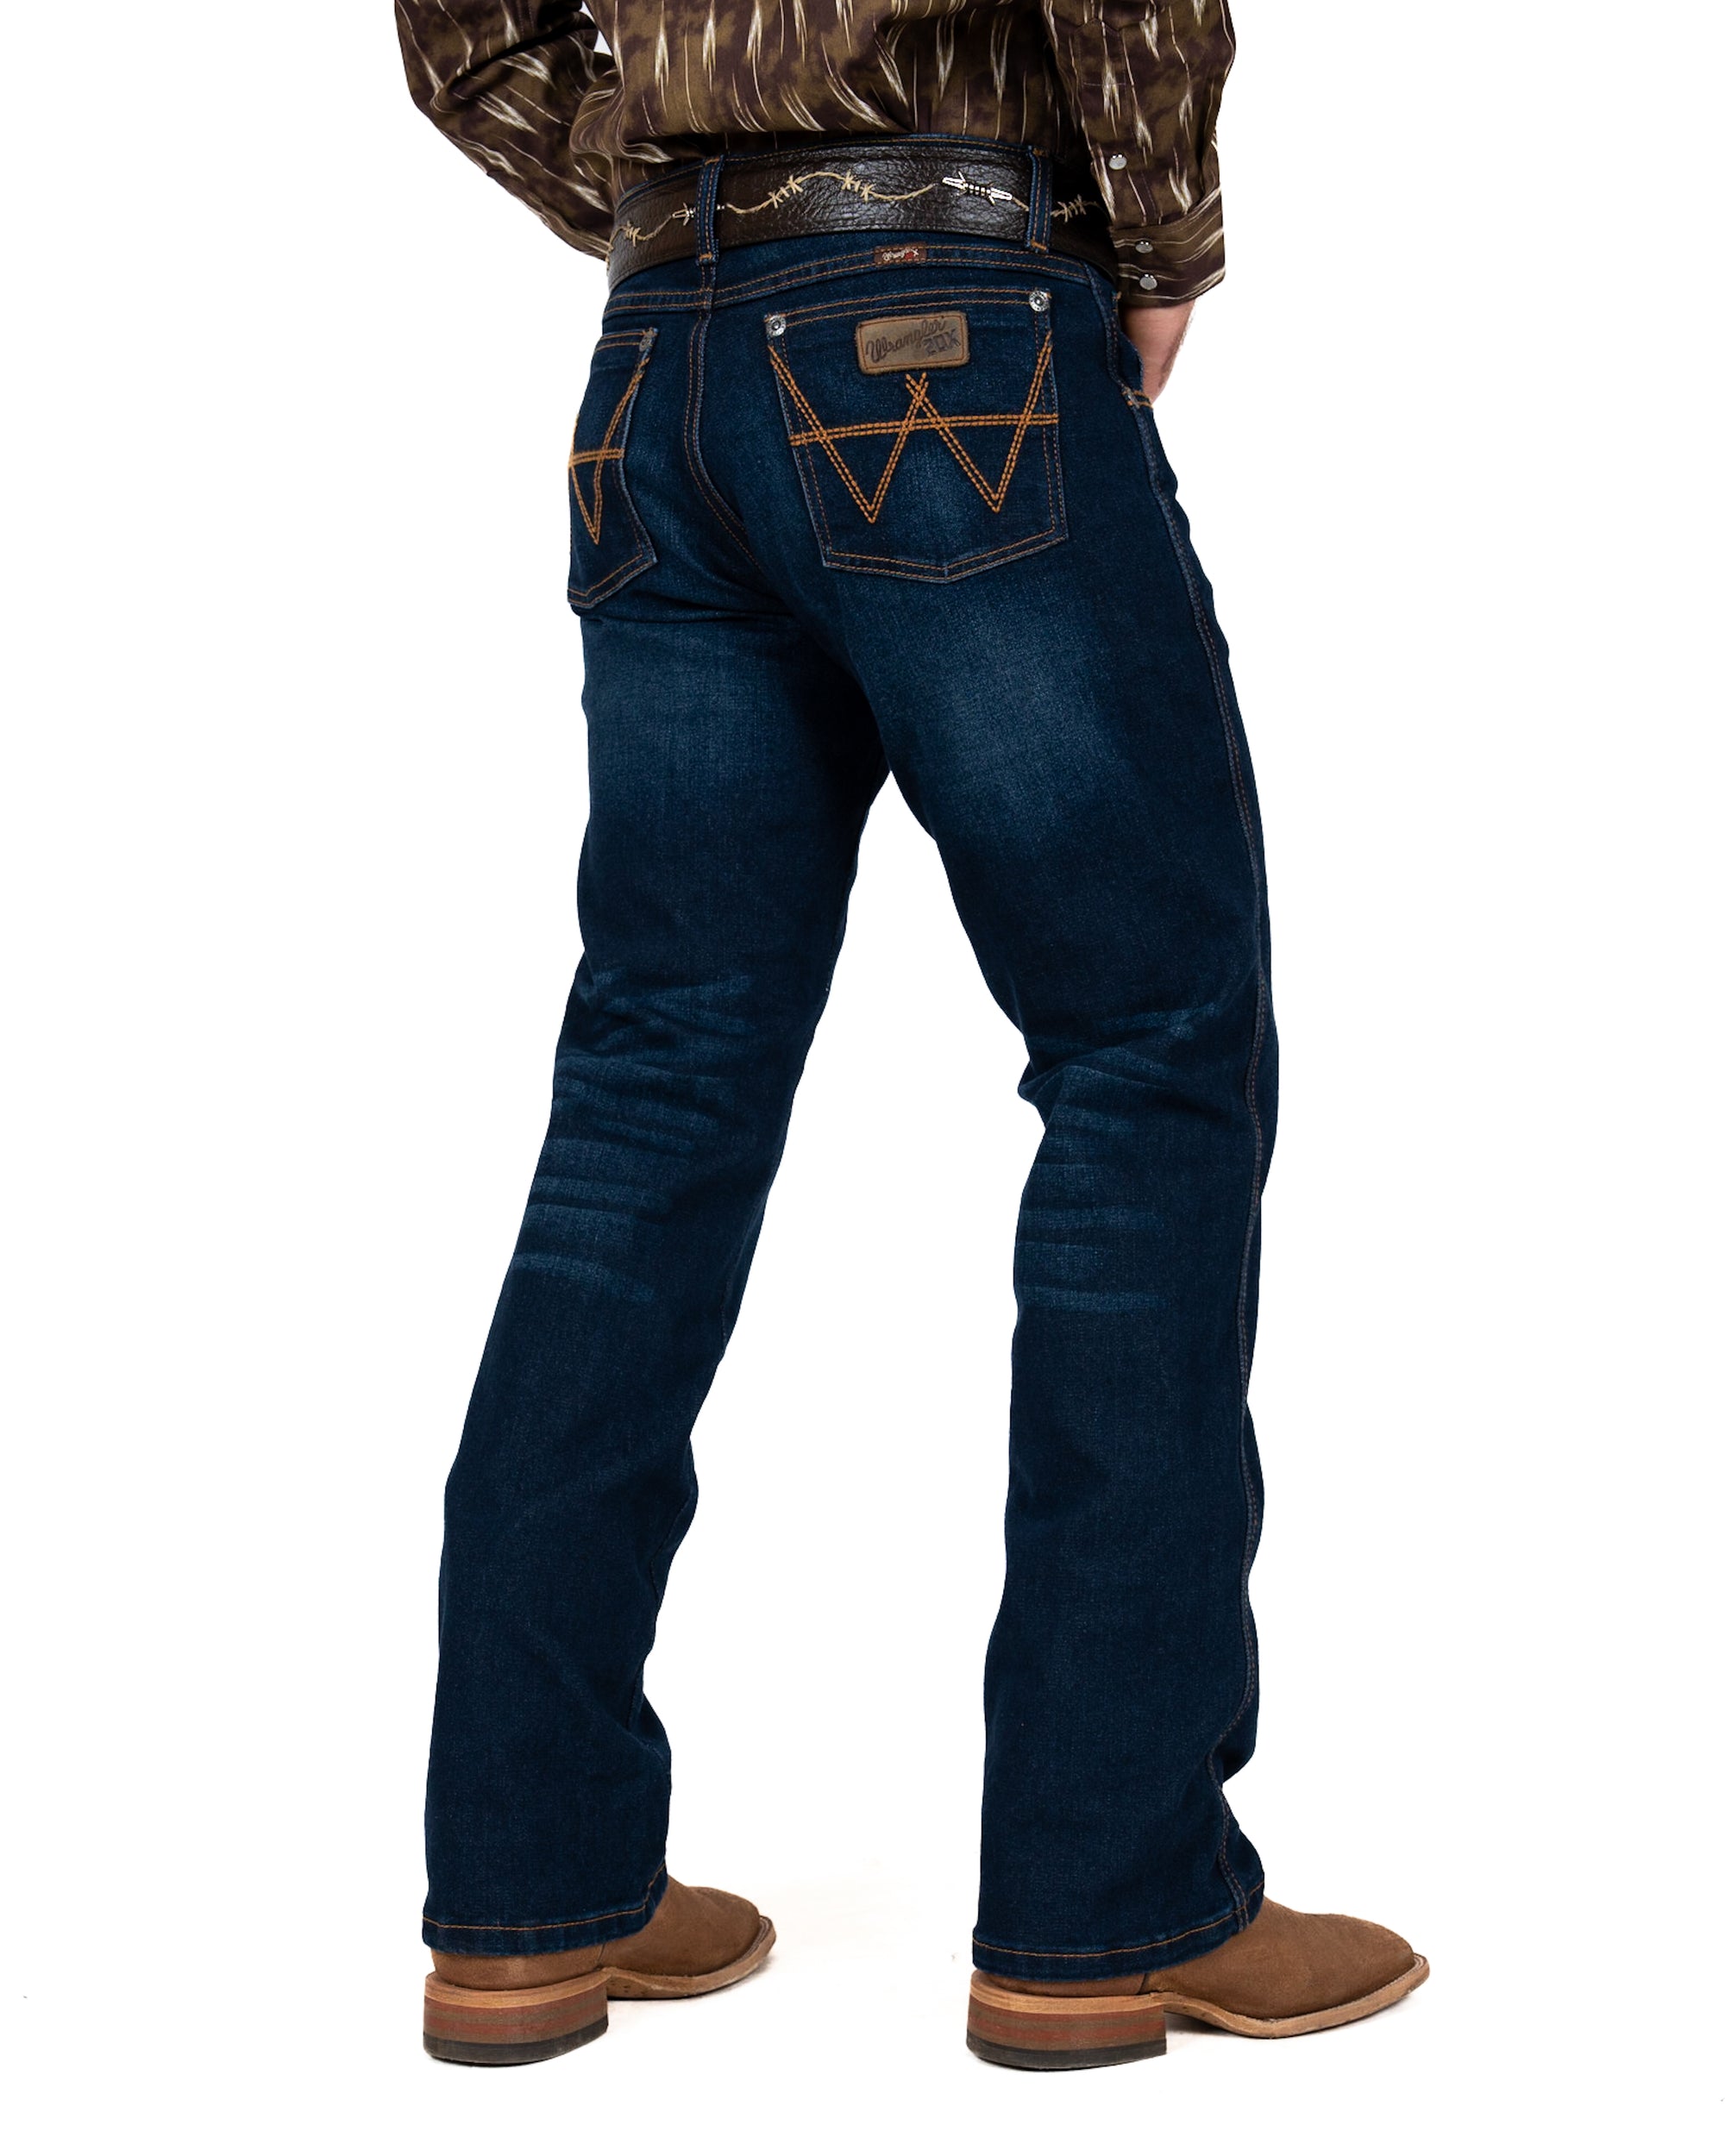 Jeans Wrangler Slim Boot 20X Caballero